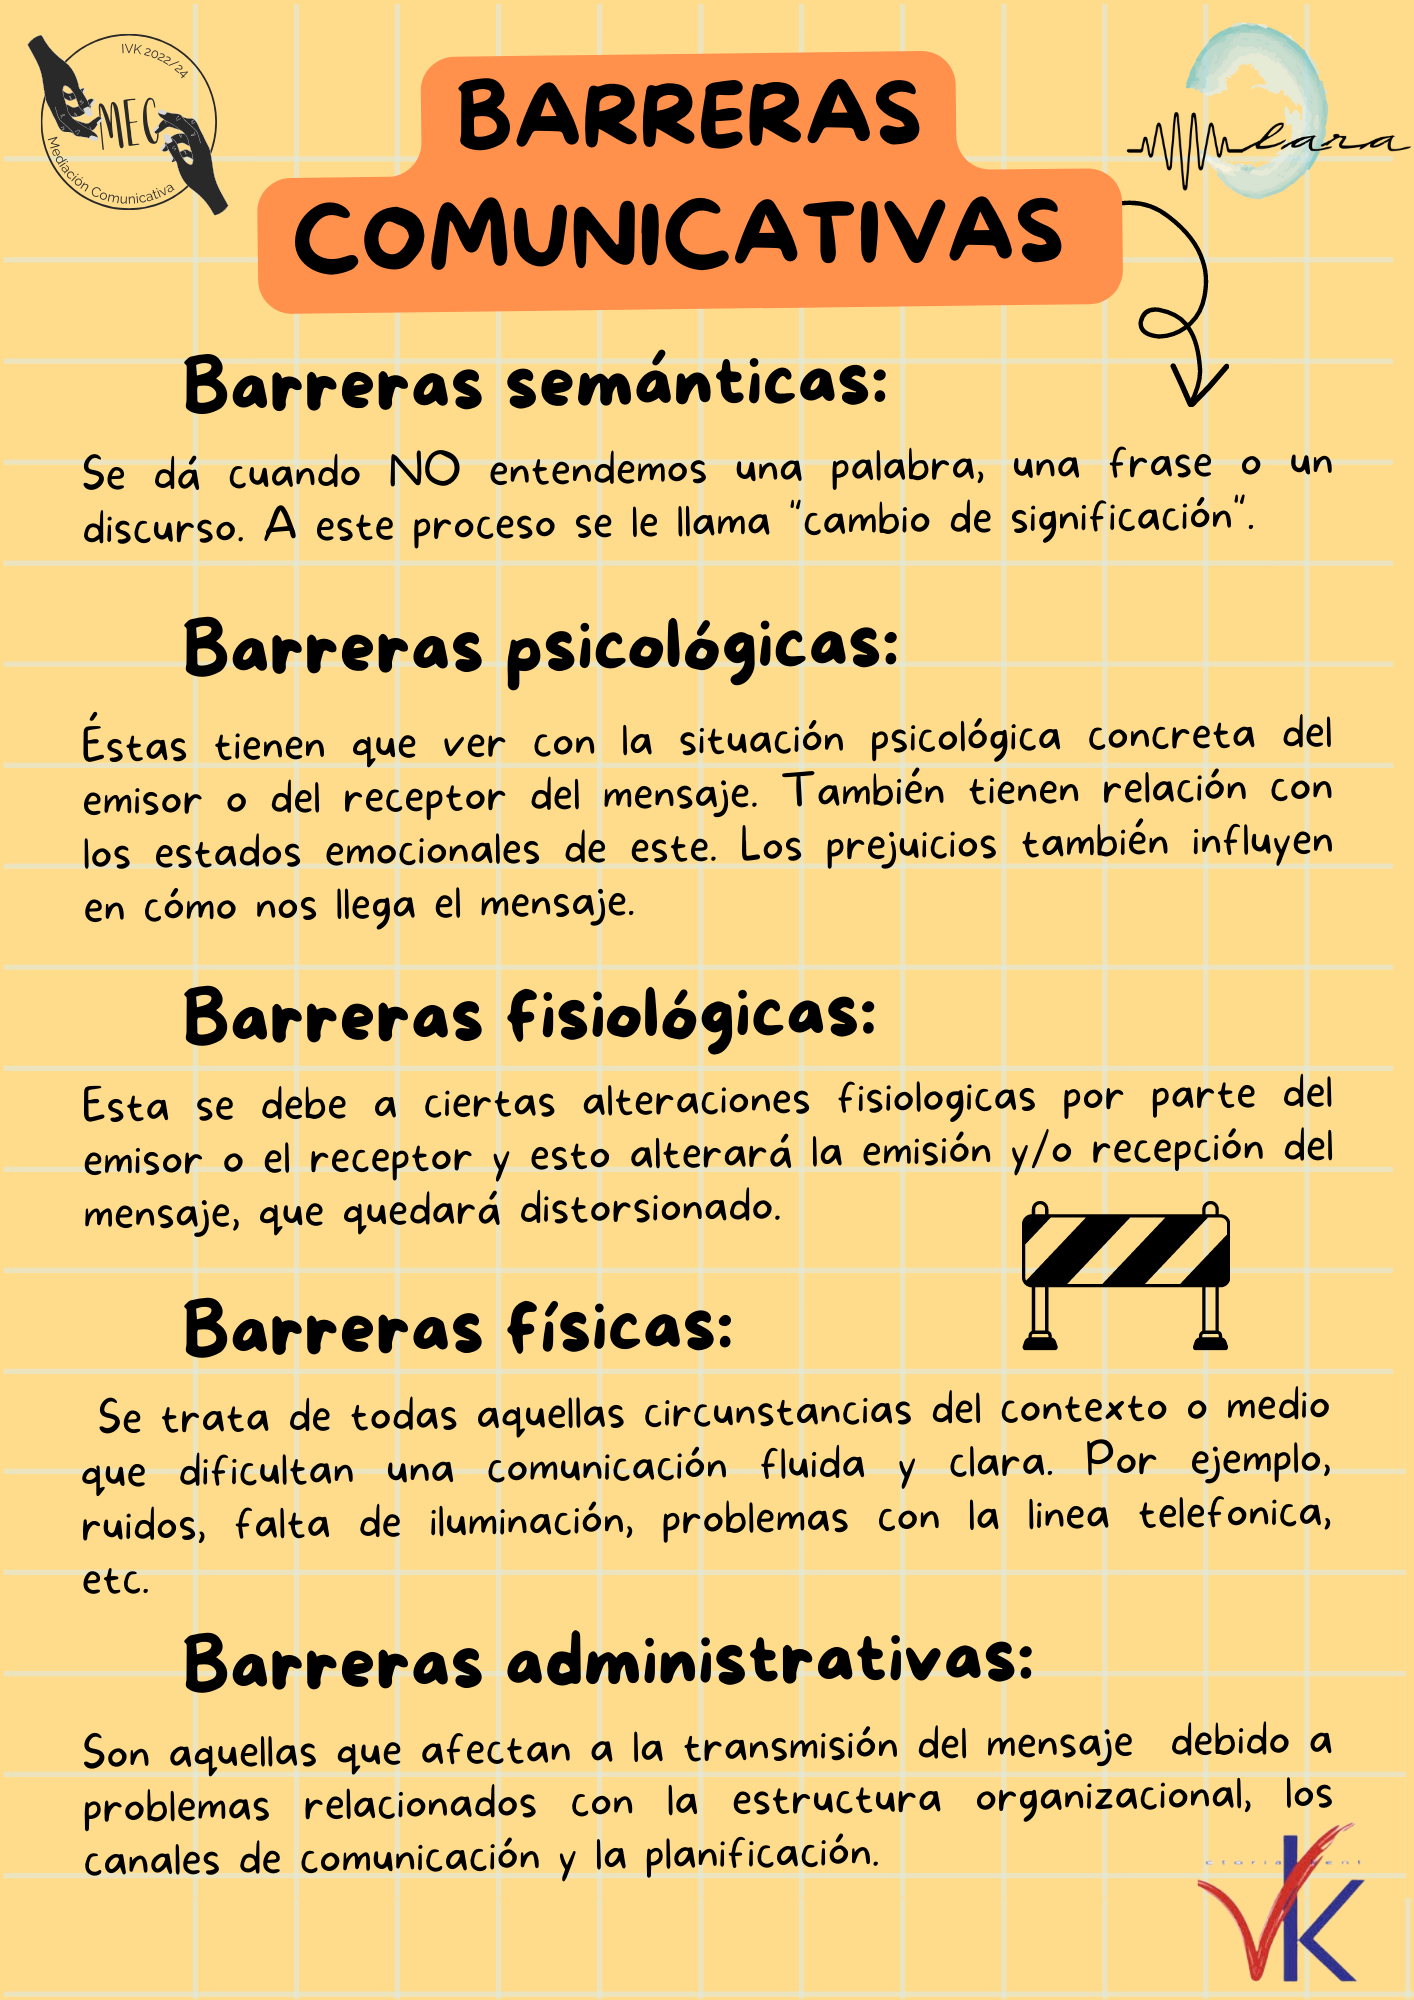 BARRERAS COMUNICATIVAS